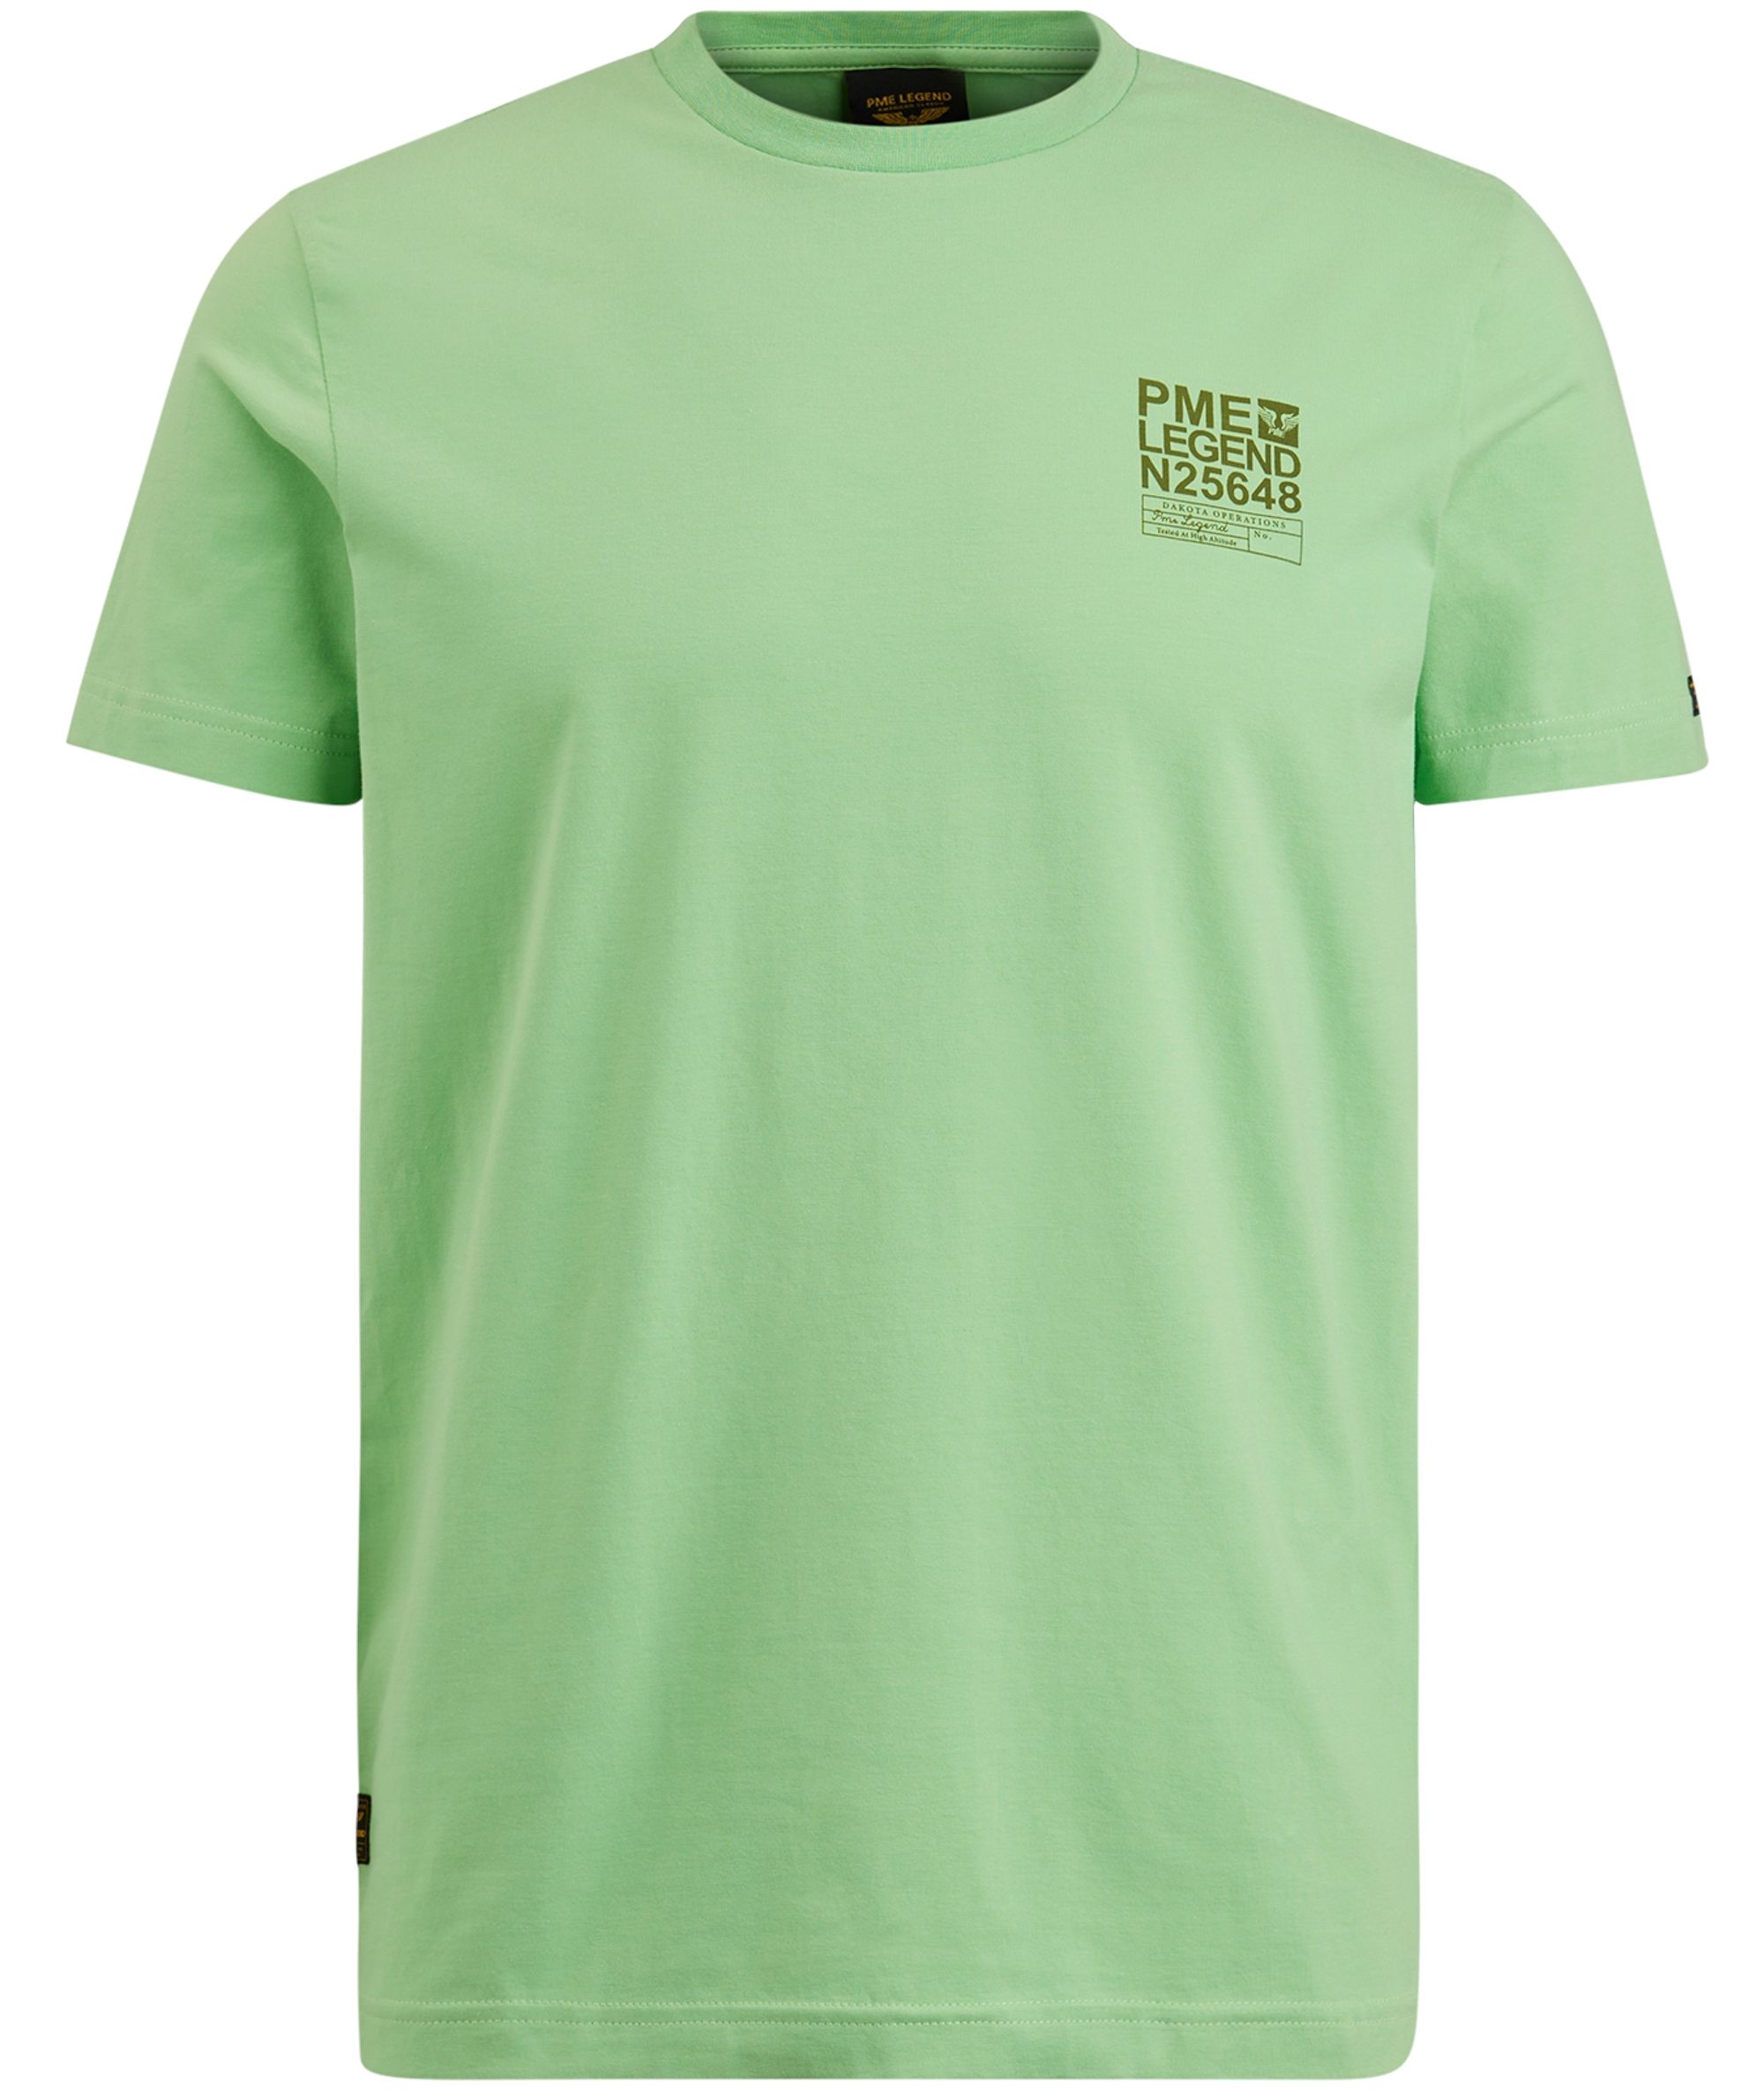 PME Legend T-shirt KM Groen 085625-001-L